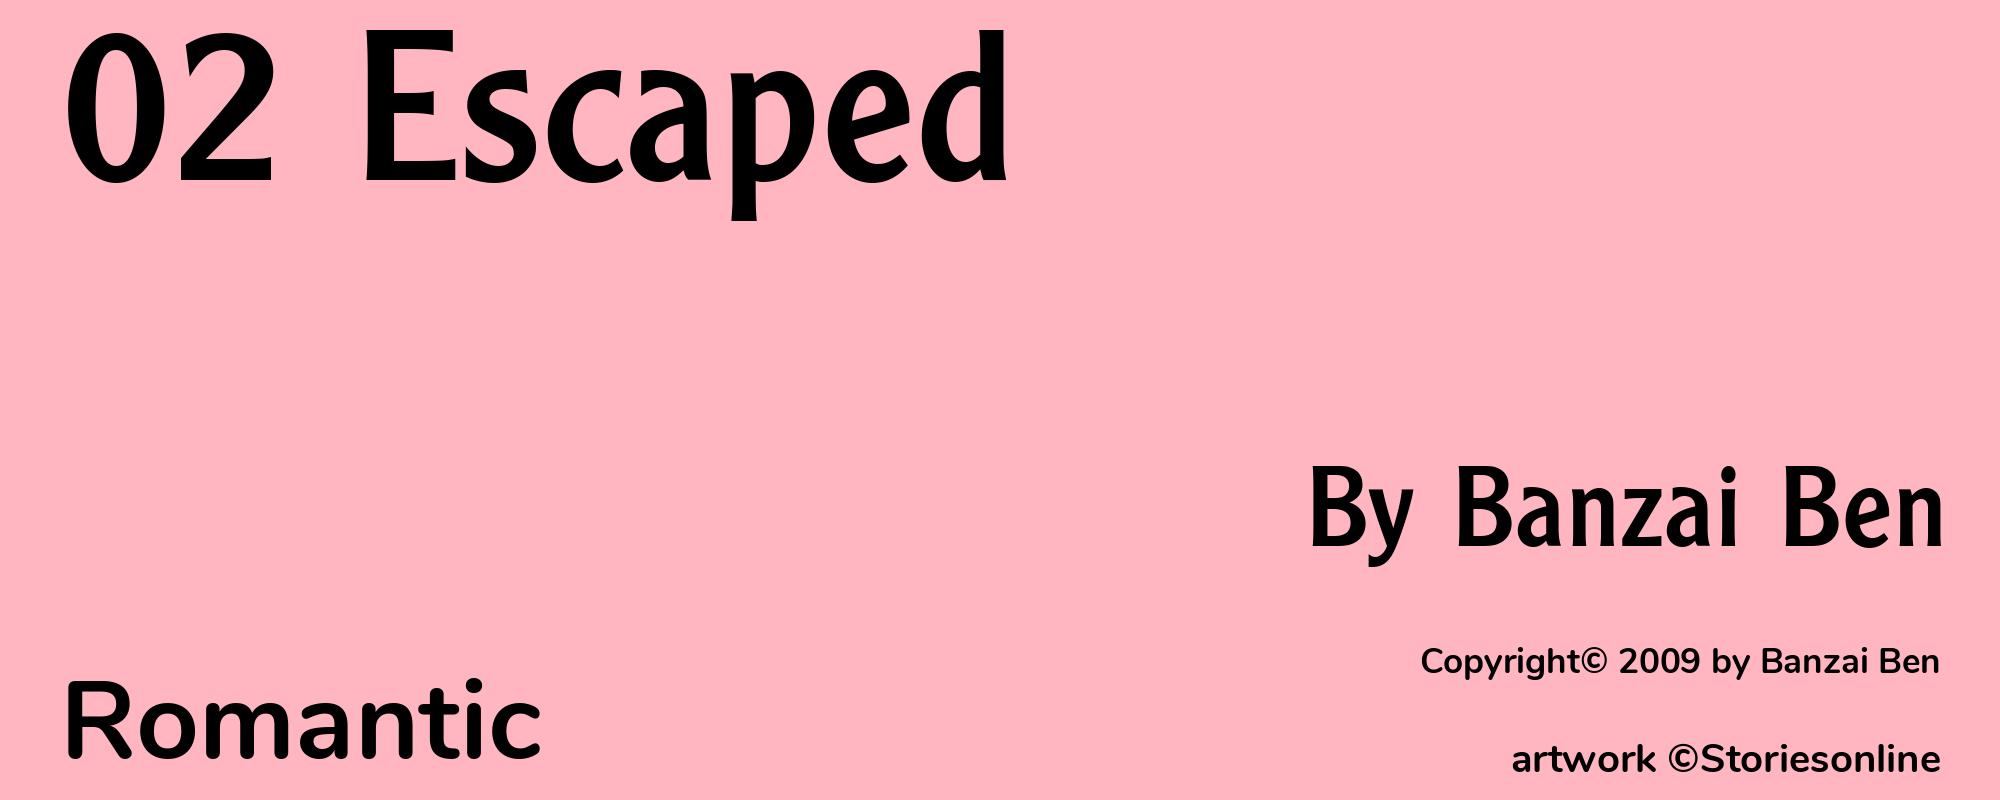 02 Escaped - Cover